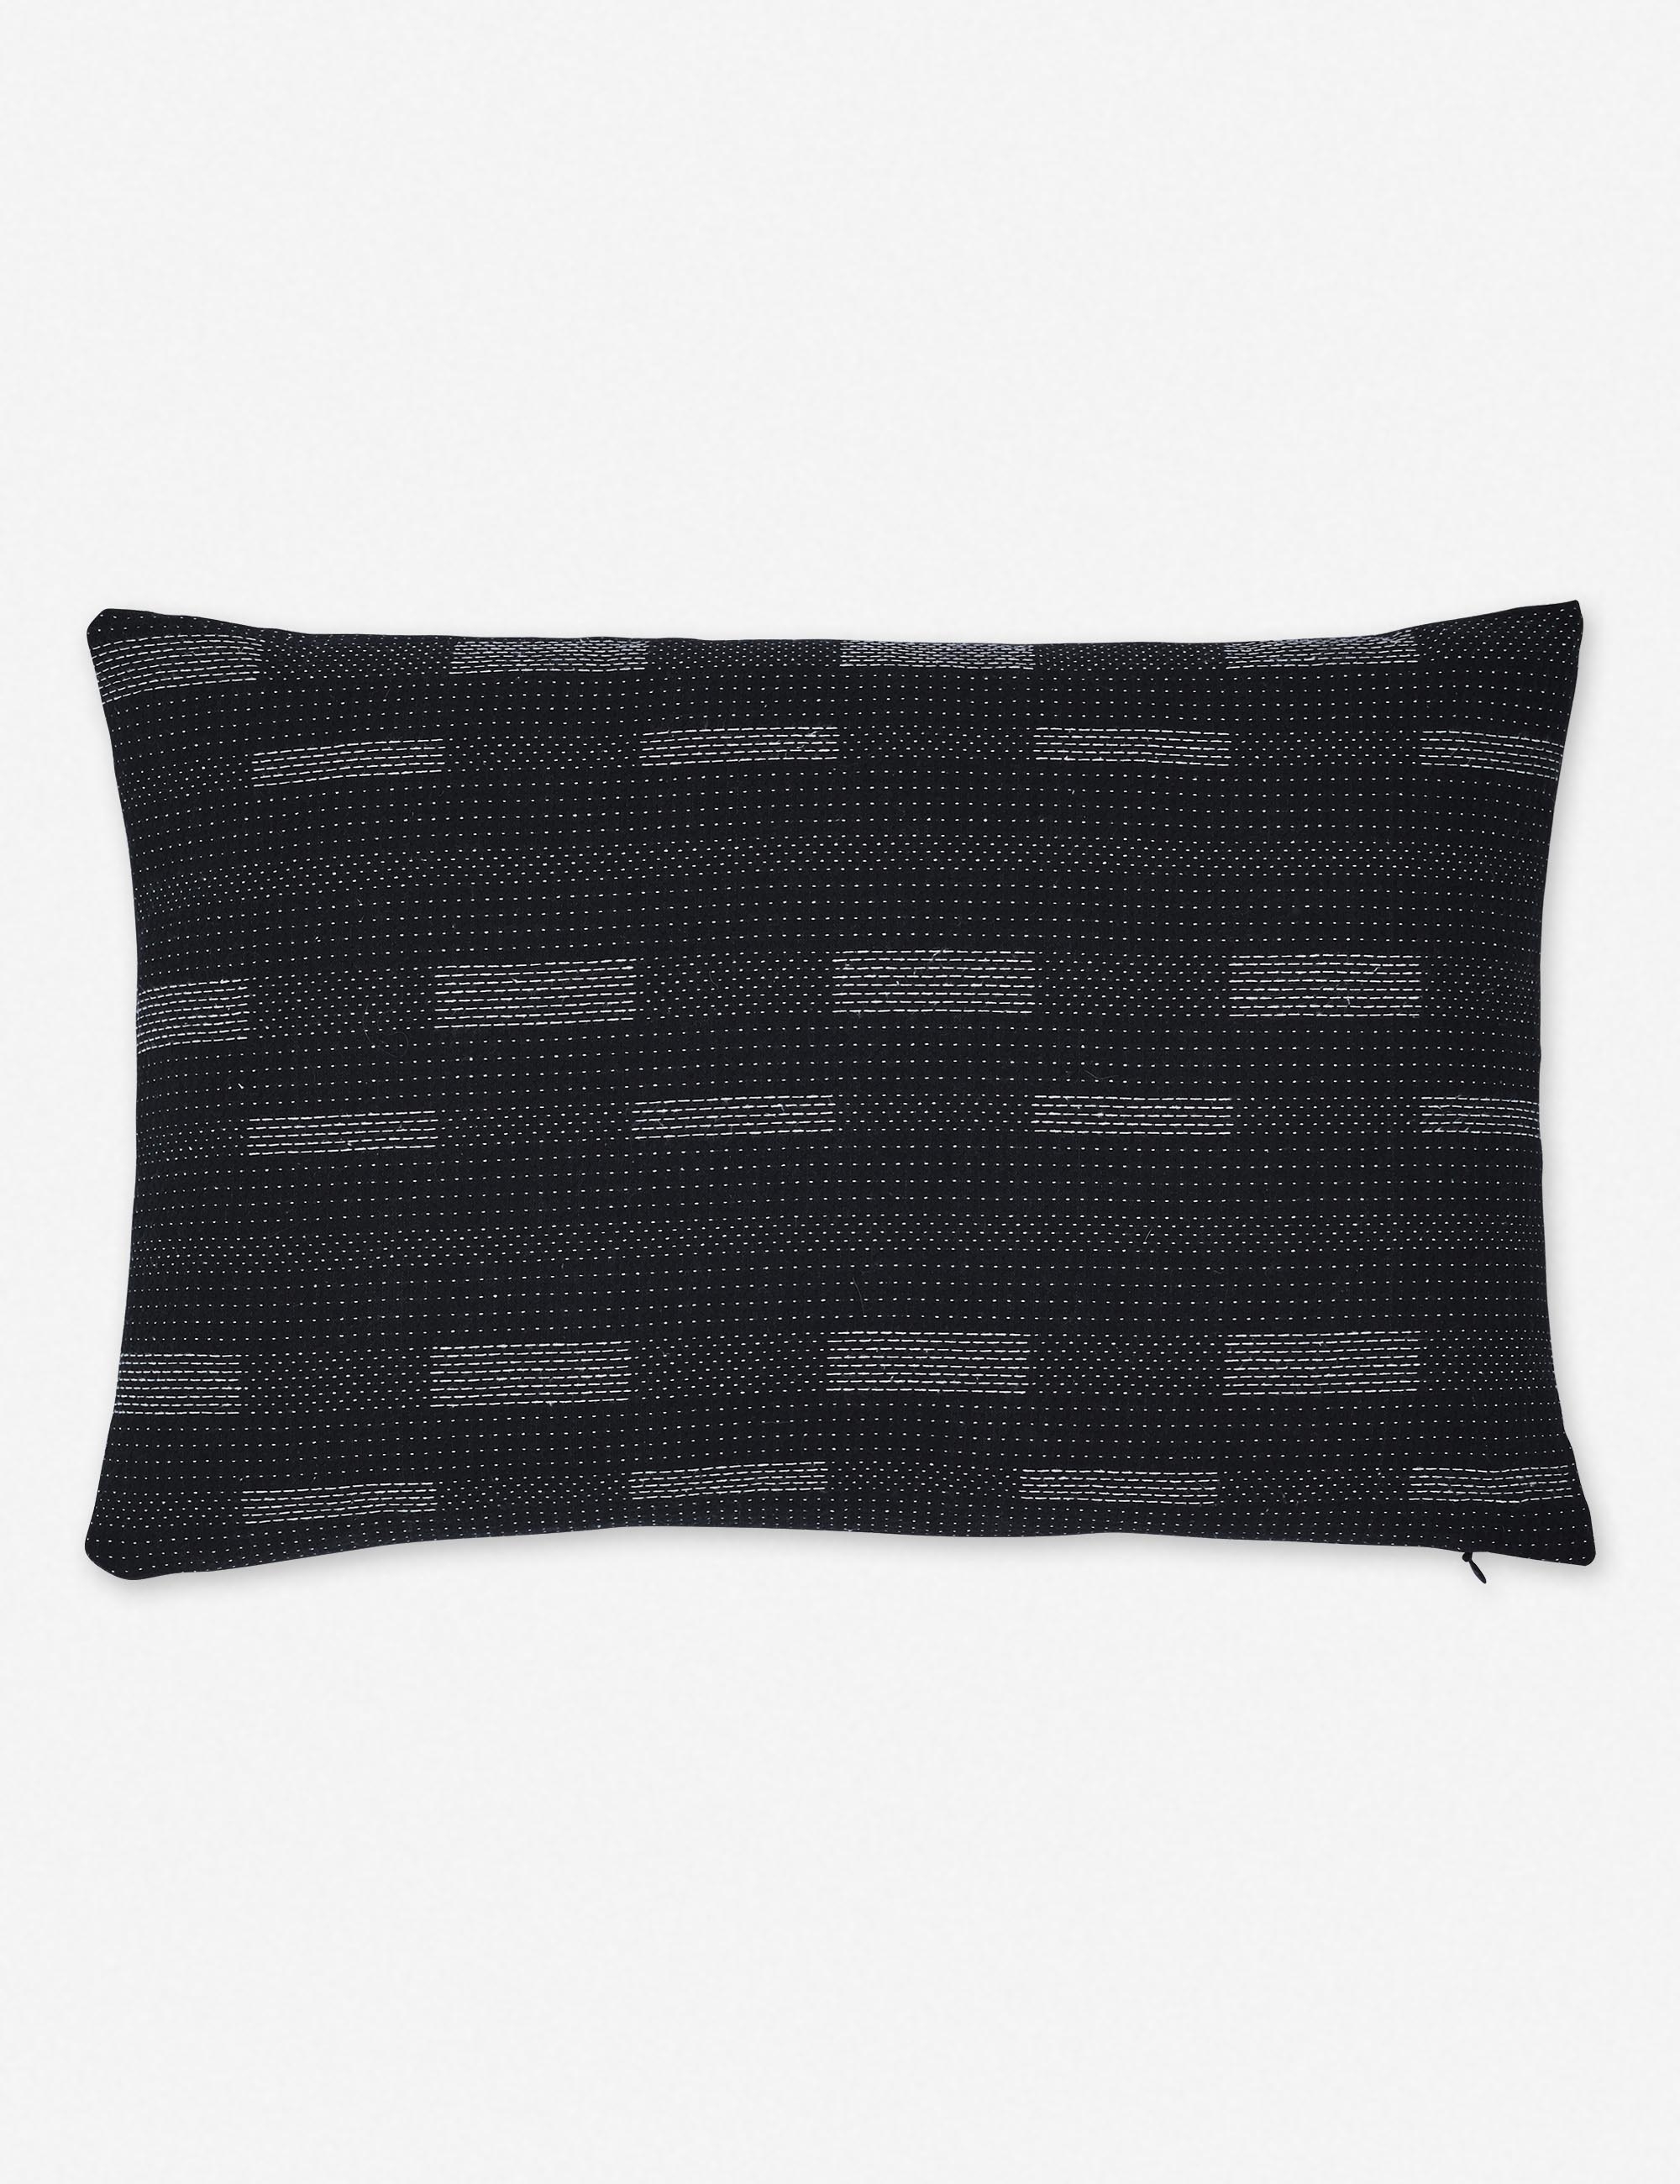 Kimora Lumbar Pillow, Black, 18" x 12" - Image 0